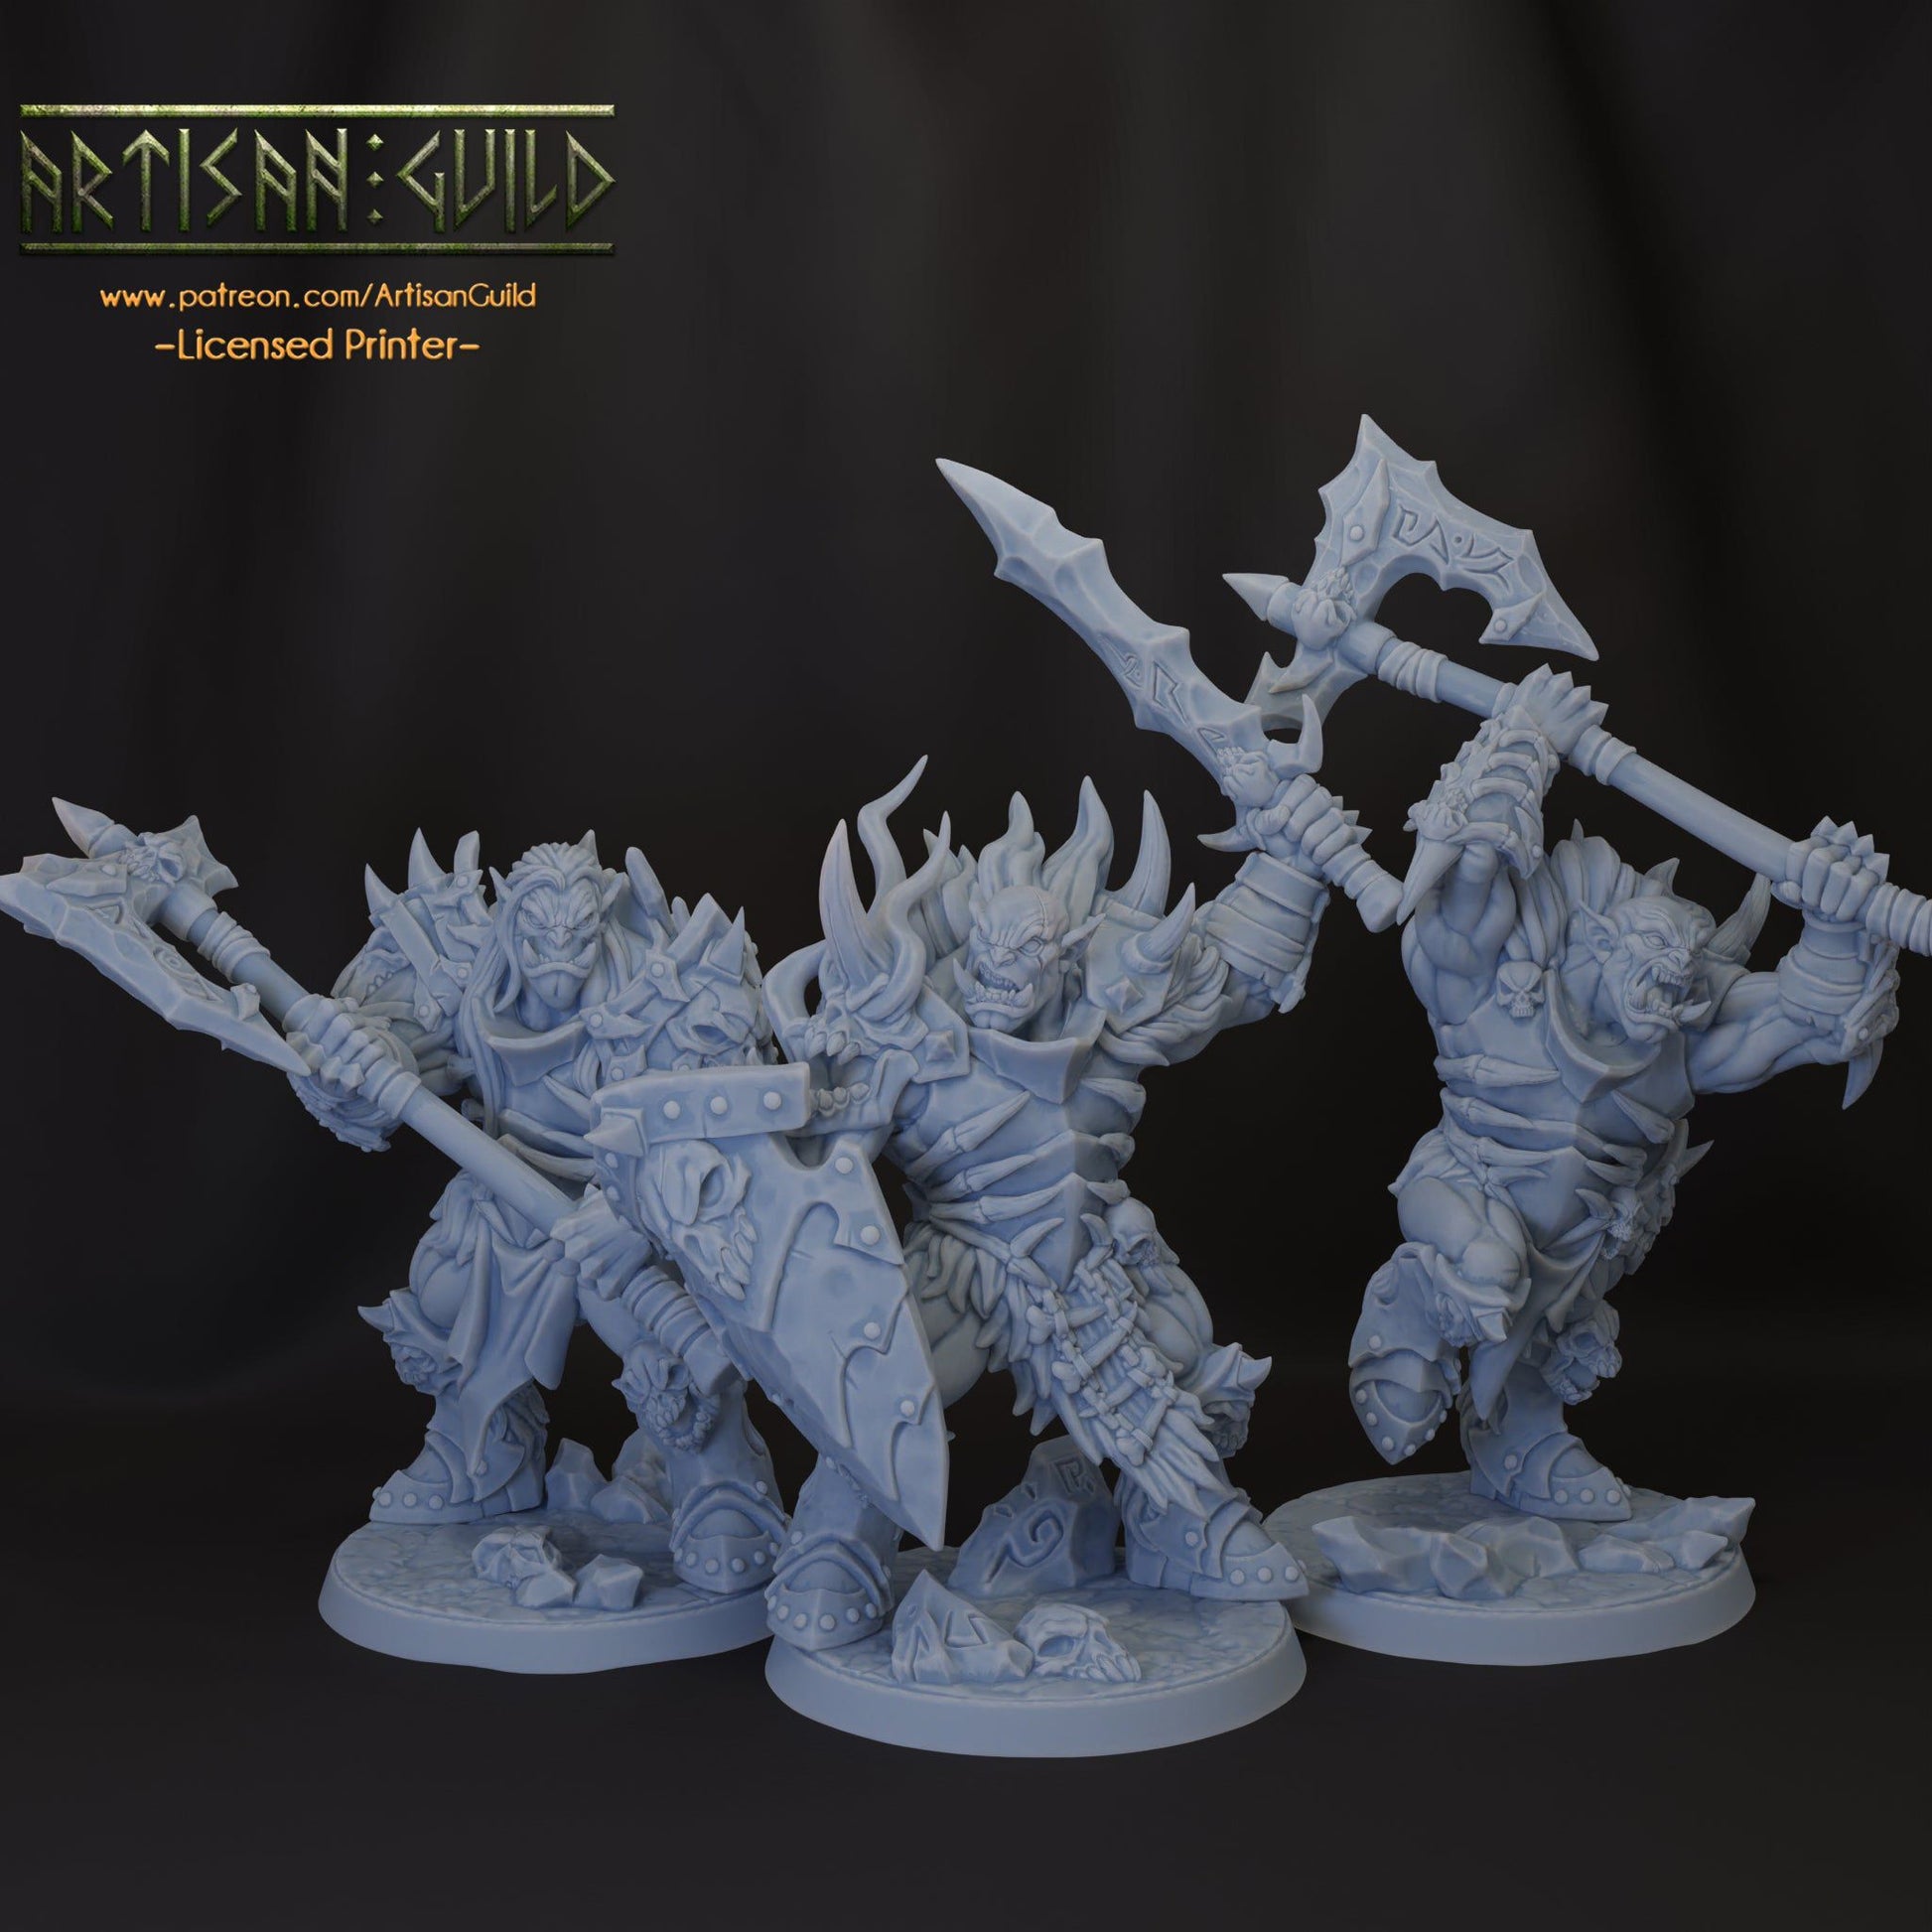 Frostmetal Orcs (männlich) ‧ 3 Varianten ‧ Artisan Guild ‧ 32mm.